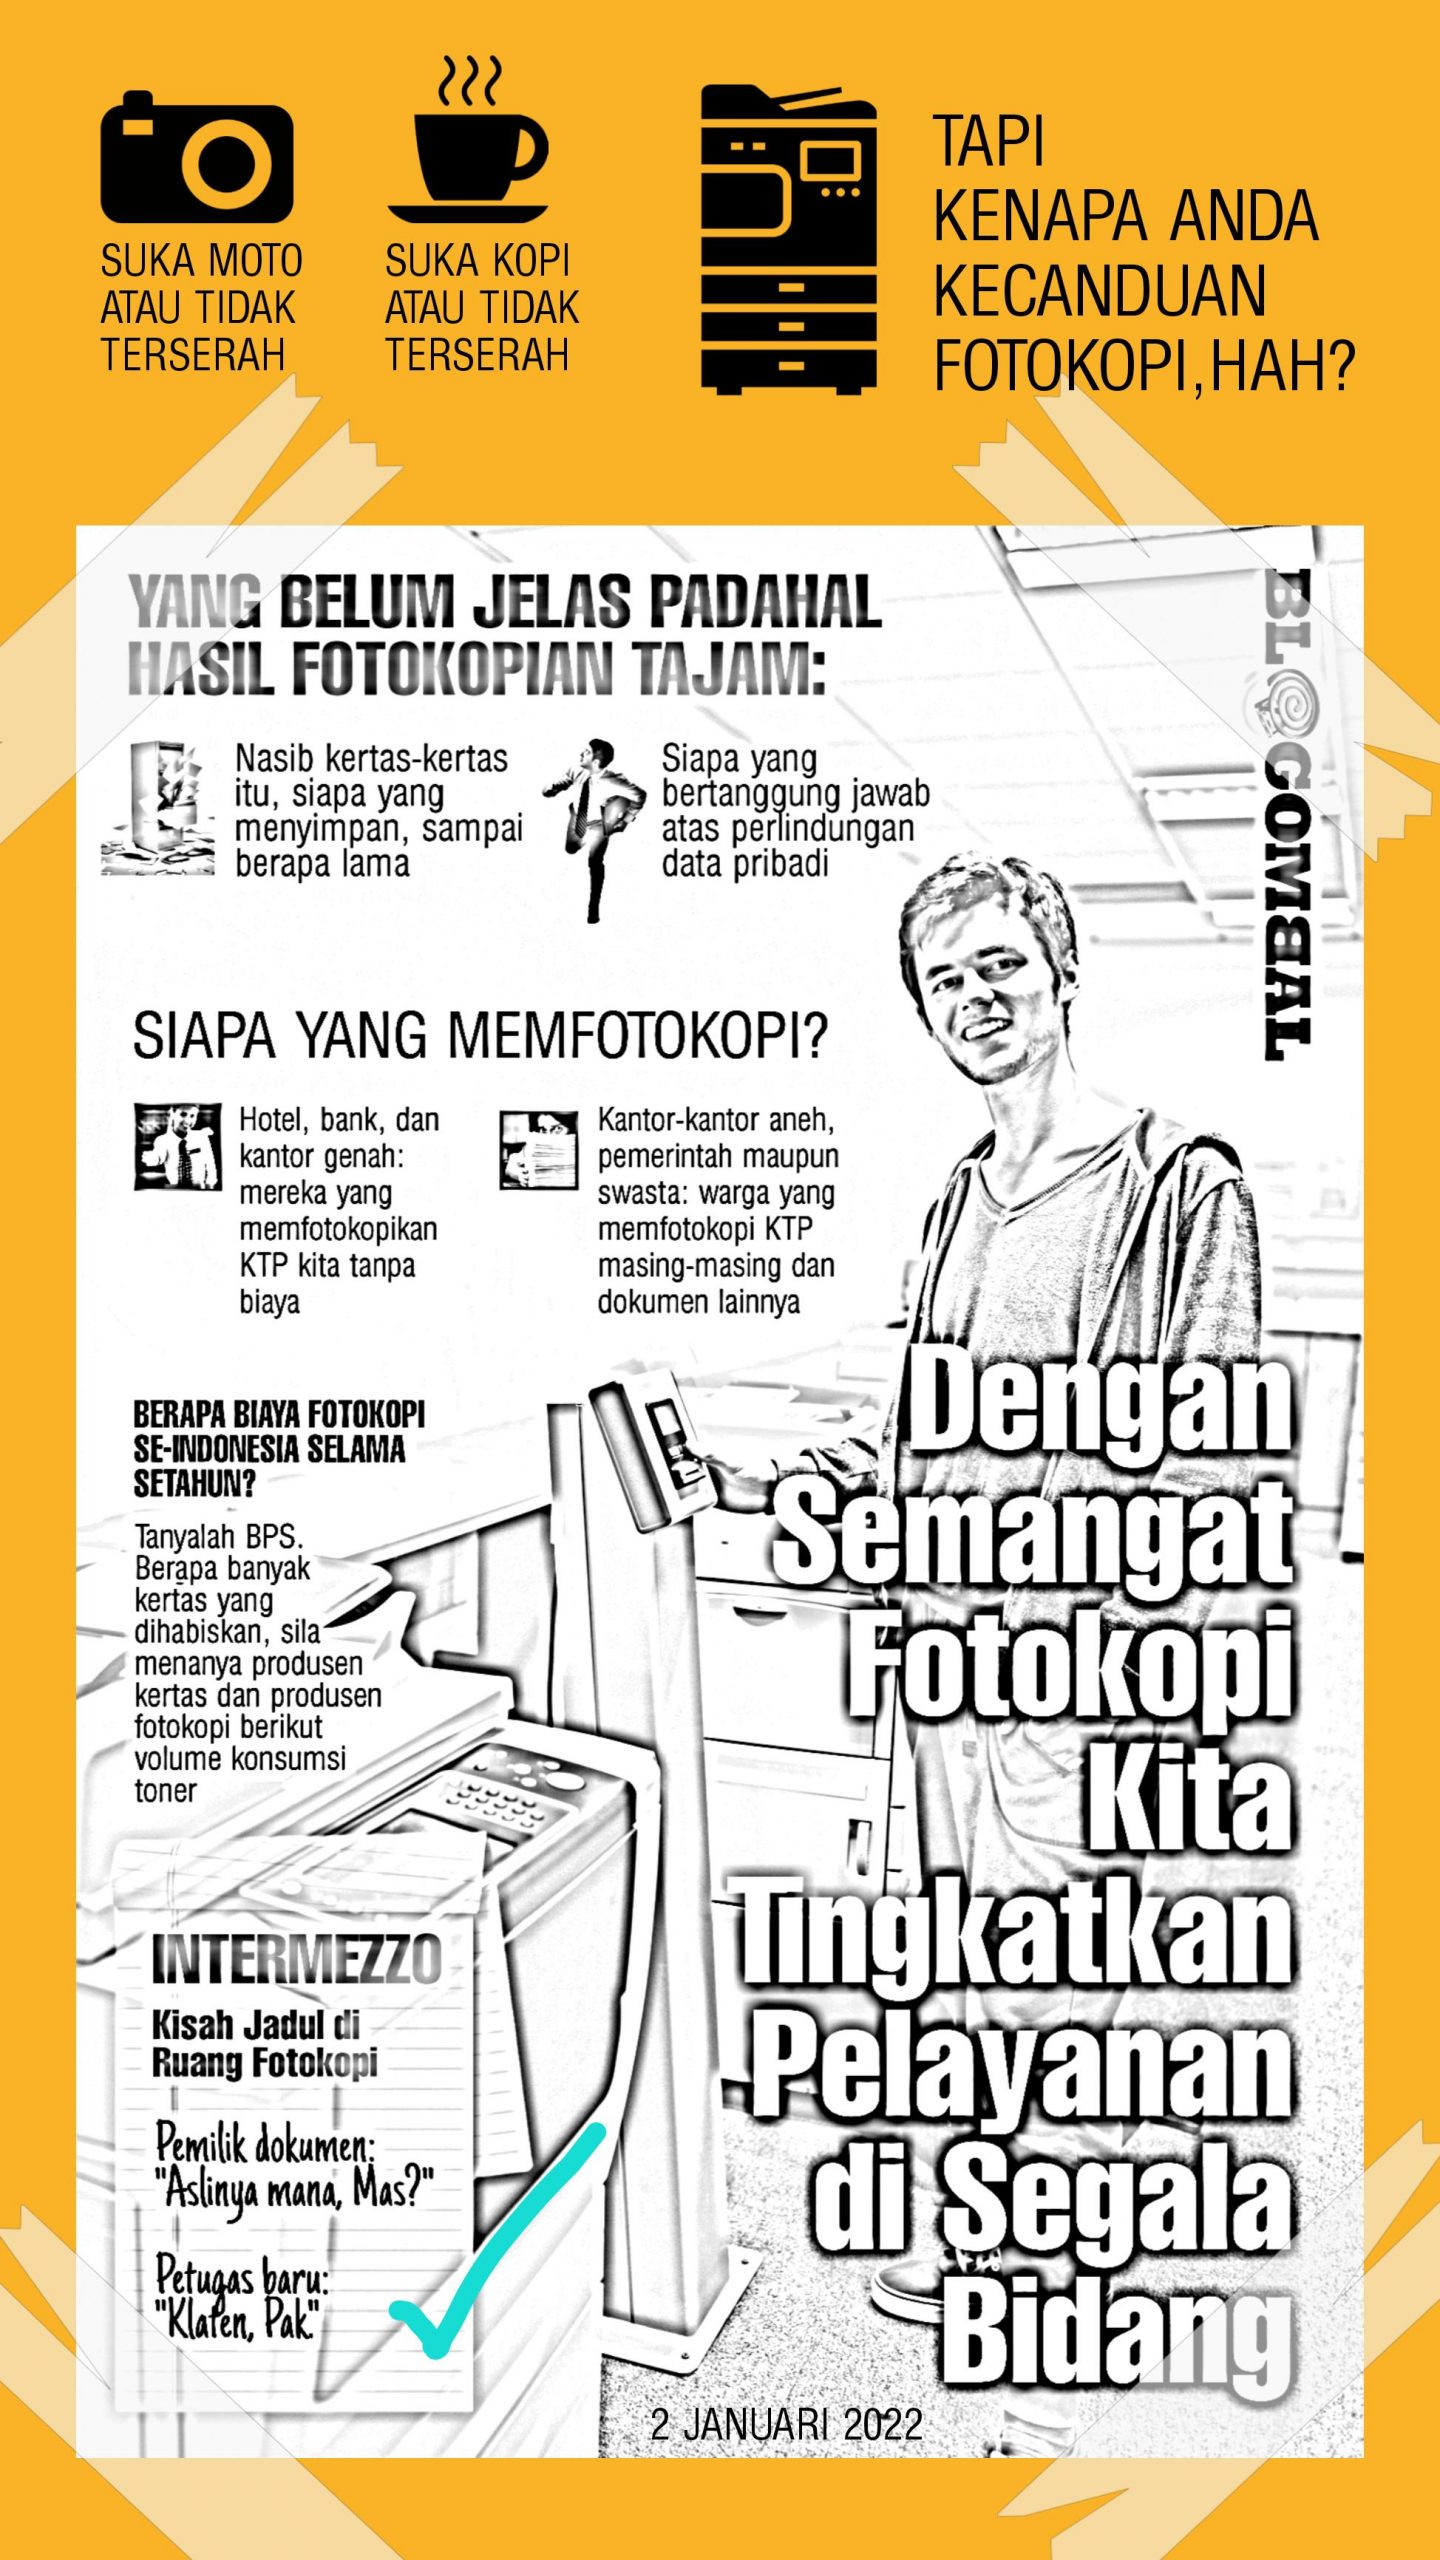 Di Indonesia semua layanan mensyaratkan fotokopian 